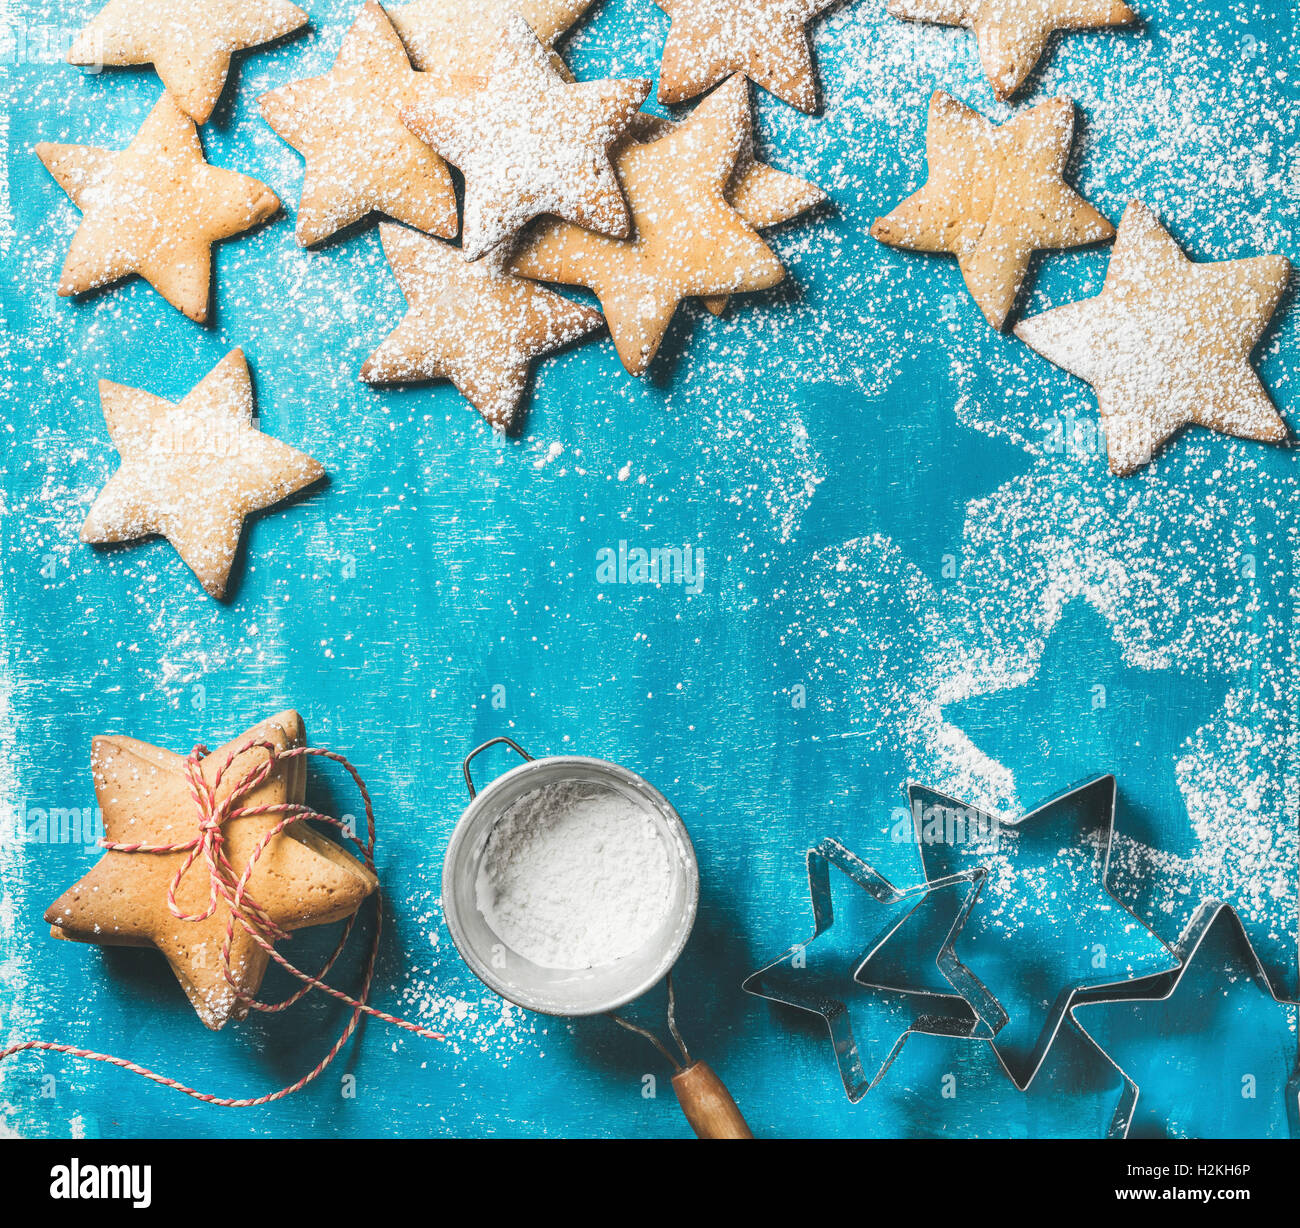 Weihnachten oder Silvester Urlaub Essen Hintergrund. Süße Lebkuchen in Form eines Sterns mit Zuckerpuder auf leuchtend blaue Farbe Stockfoto